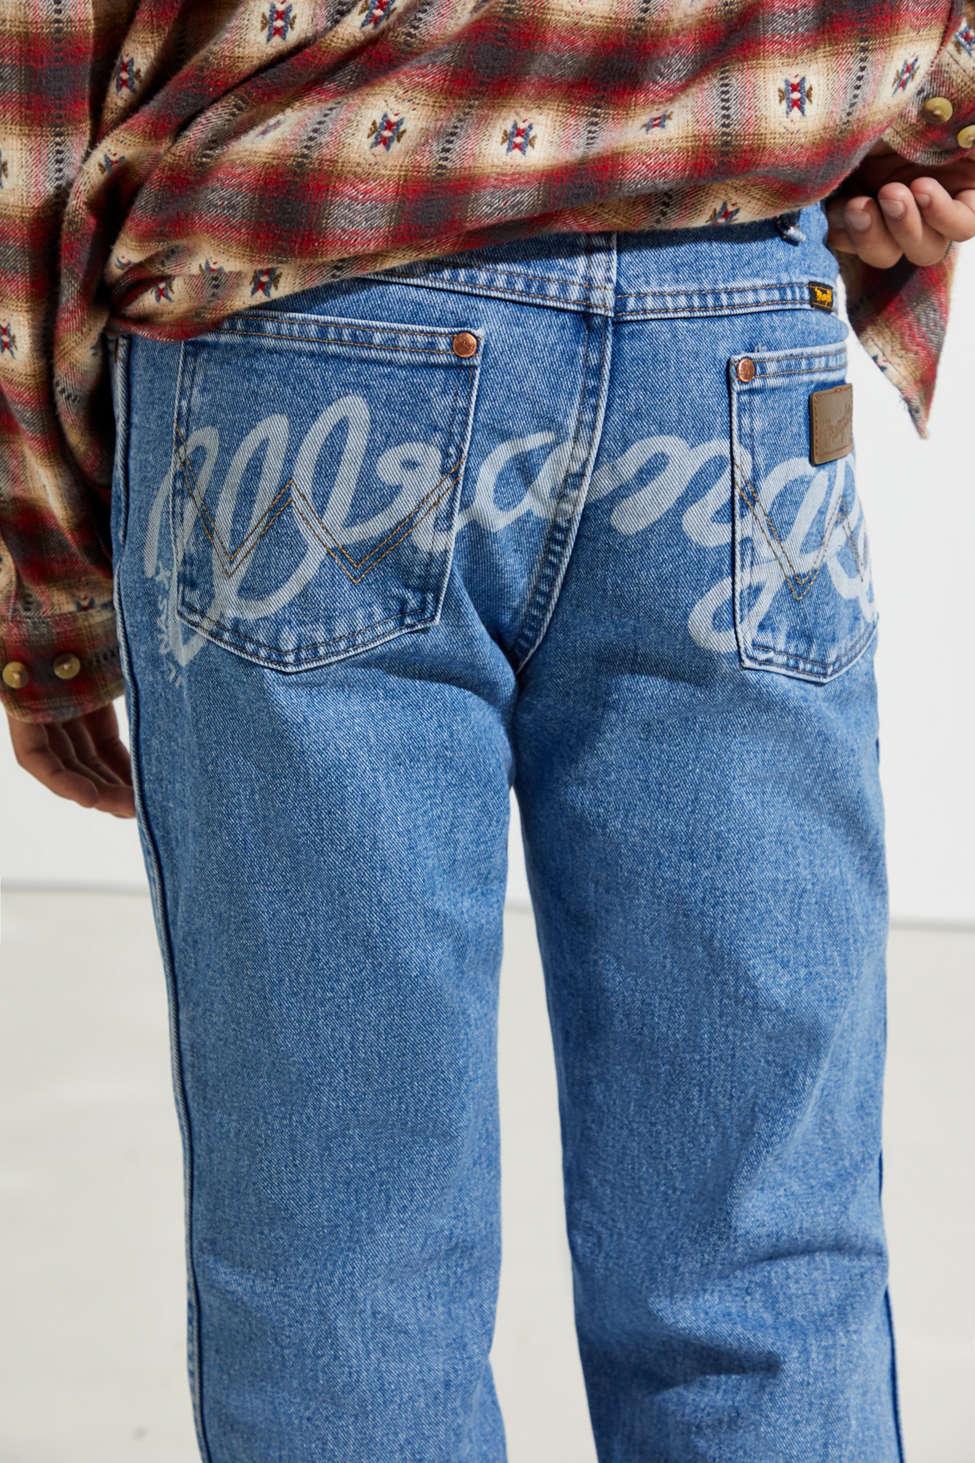 wrangler jeans lil nas x